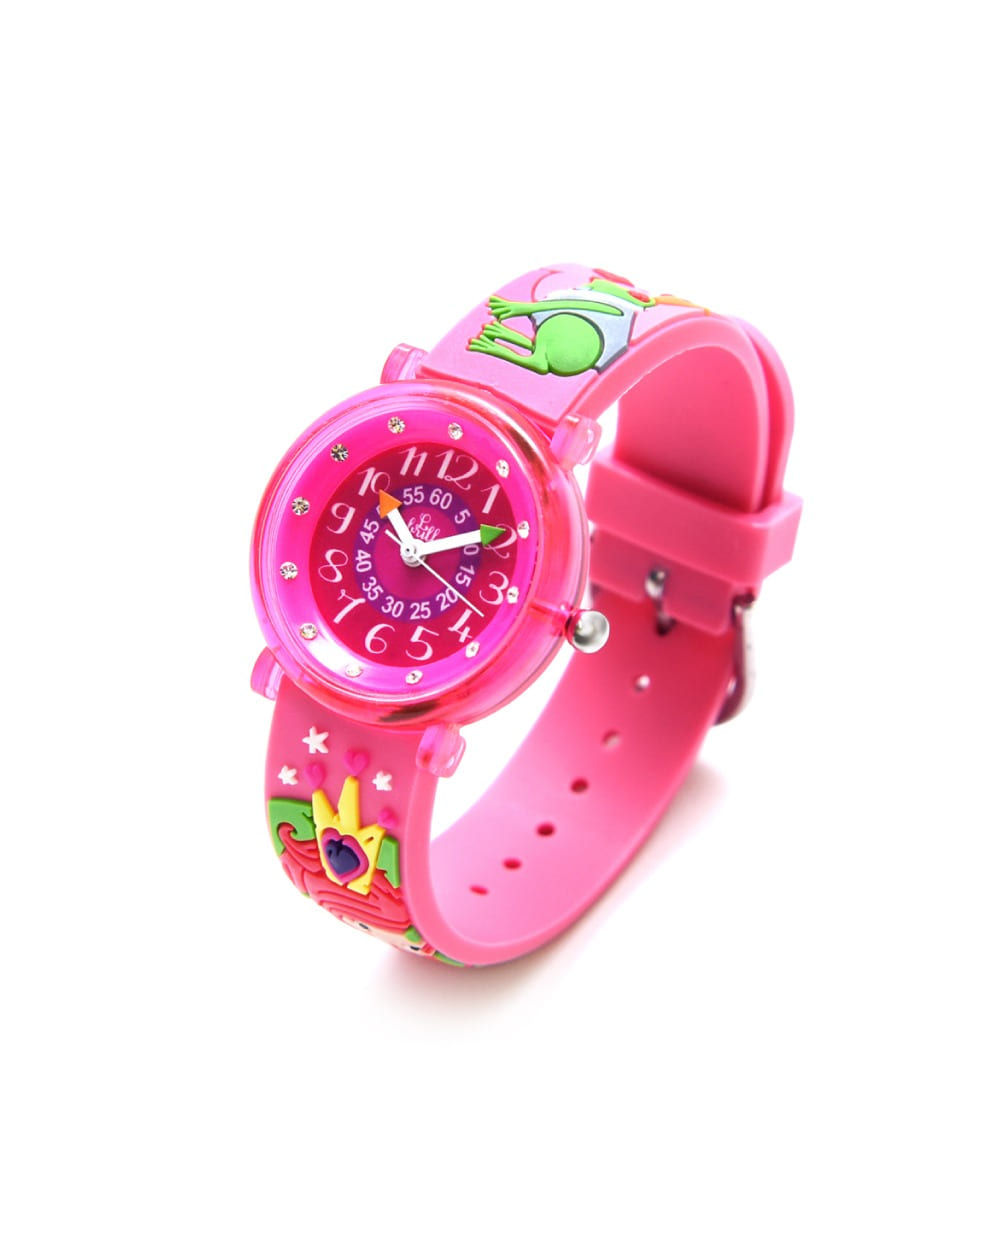 베이비와치 프랑스 아동손목시계 - ZAP Queen(여왕)